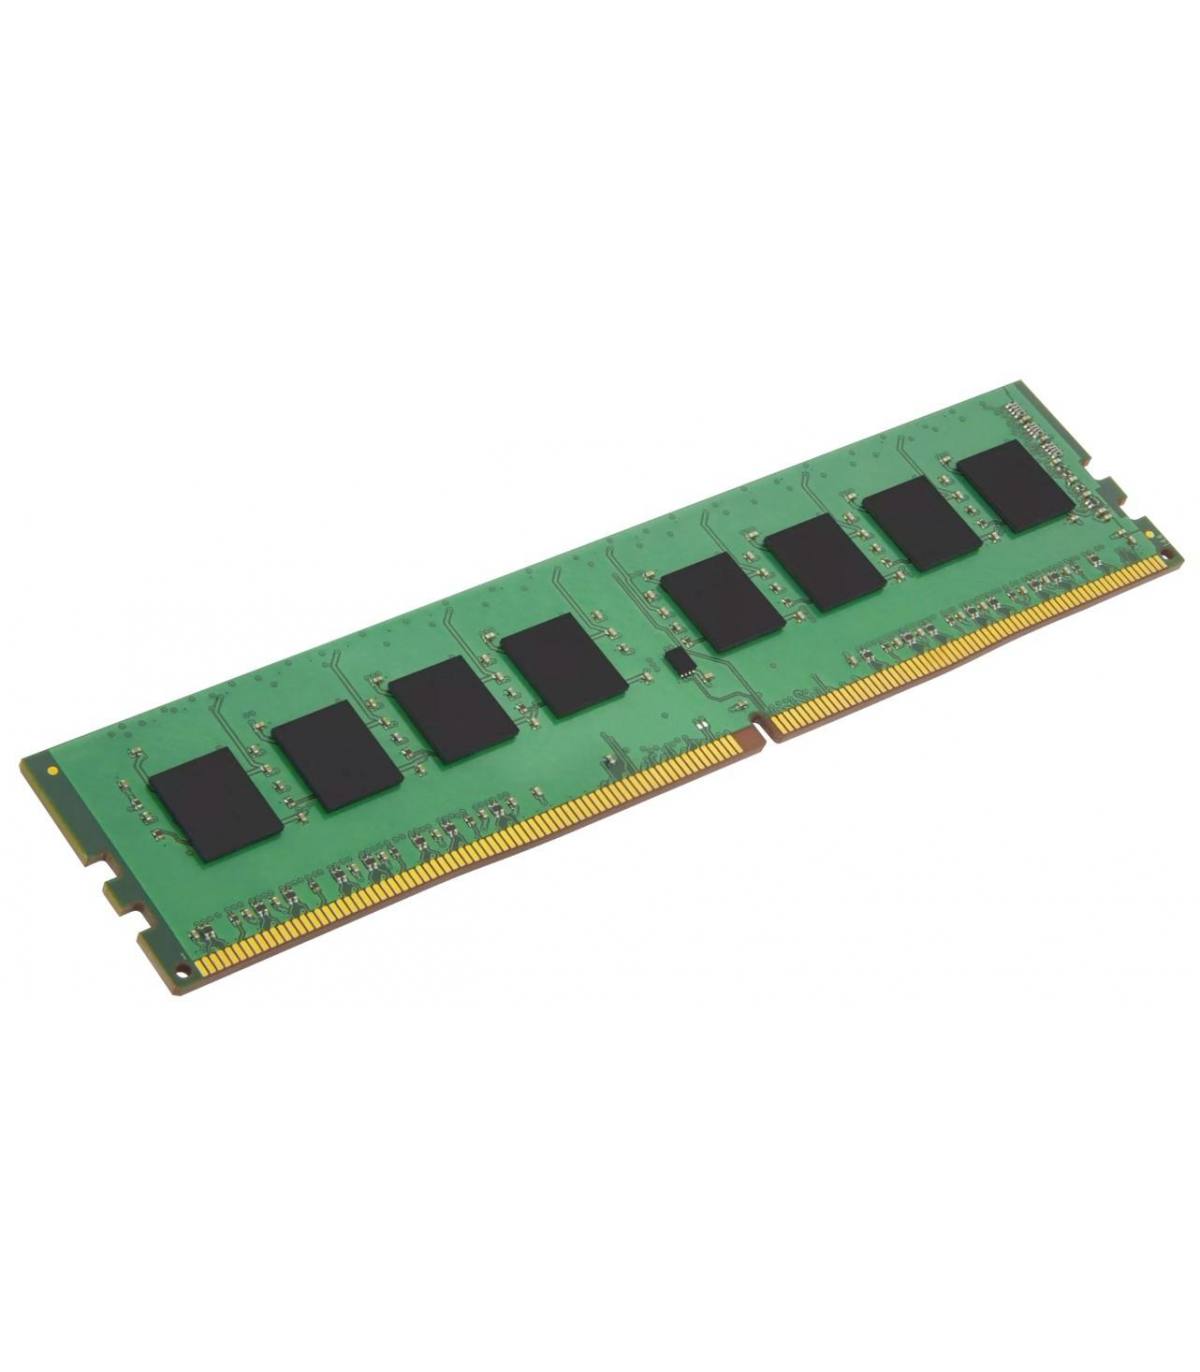 RAM SAMSUNG/IBM 4GB 2Rx4 PC3 10600R 49Y1445 CN M393B5170FH0-CH9 1141